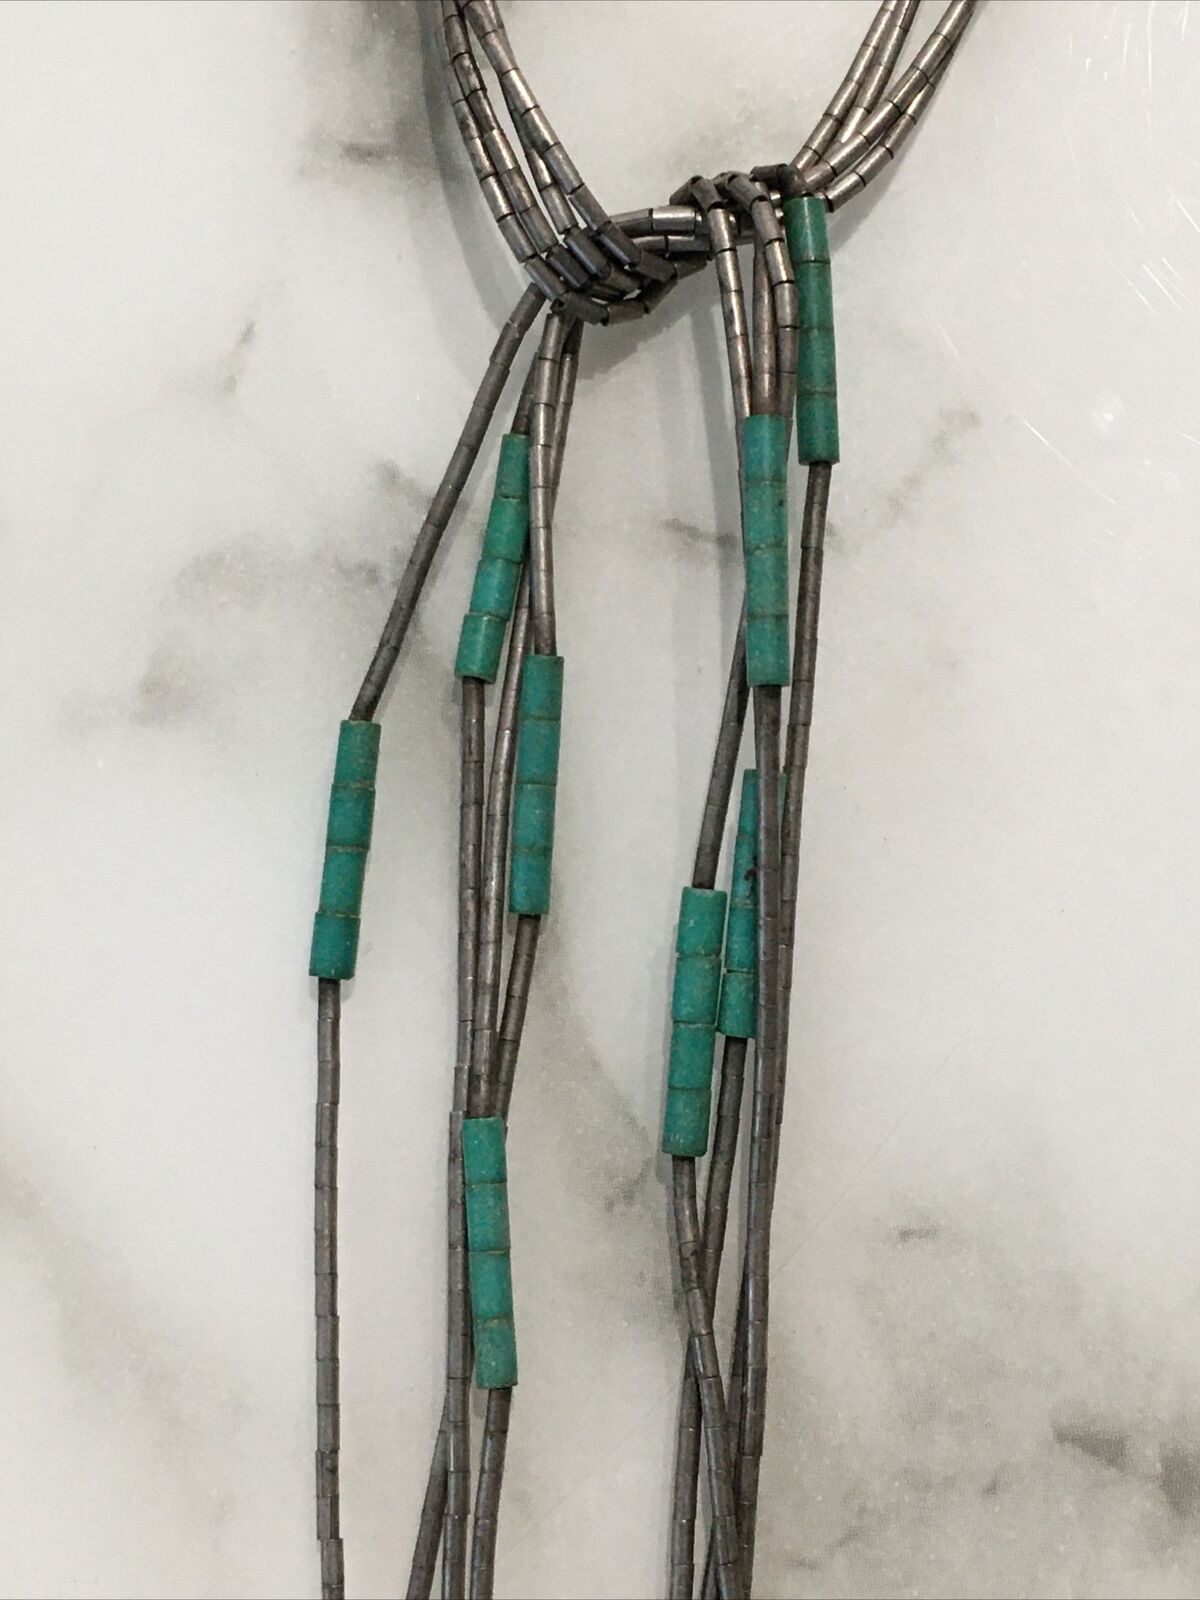 Vintage Navajo Sterling Silver and Turquoise Fringe tassel necklace RARE Design